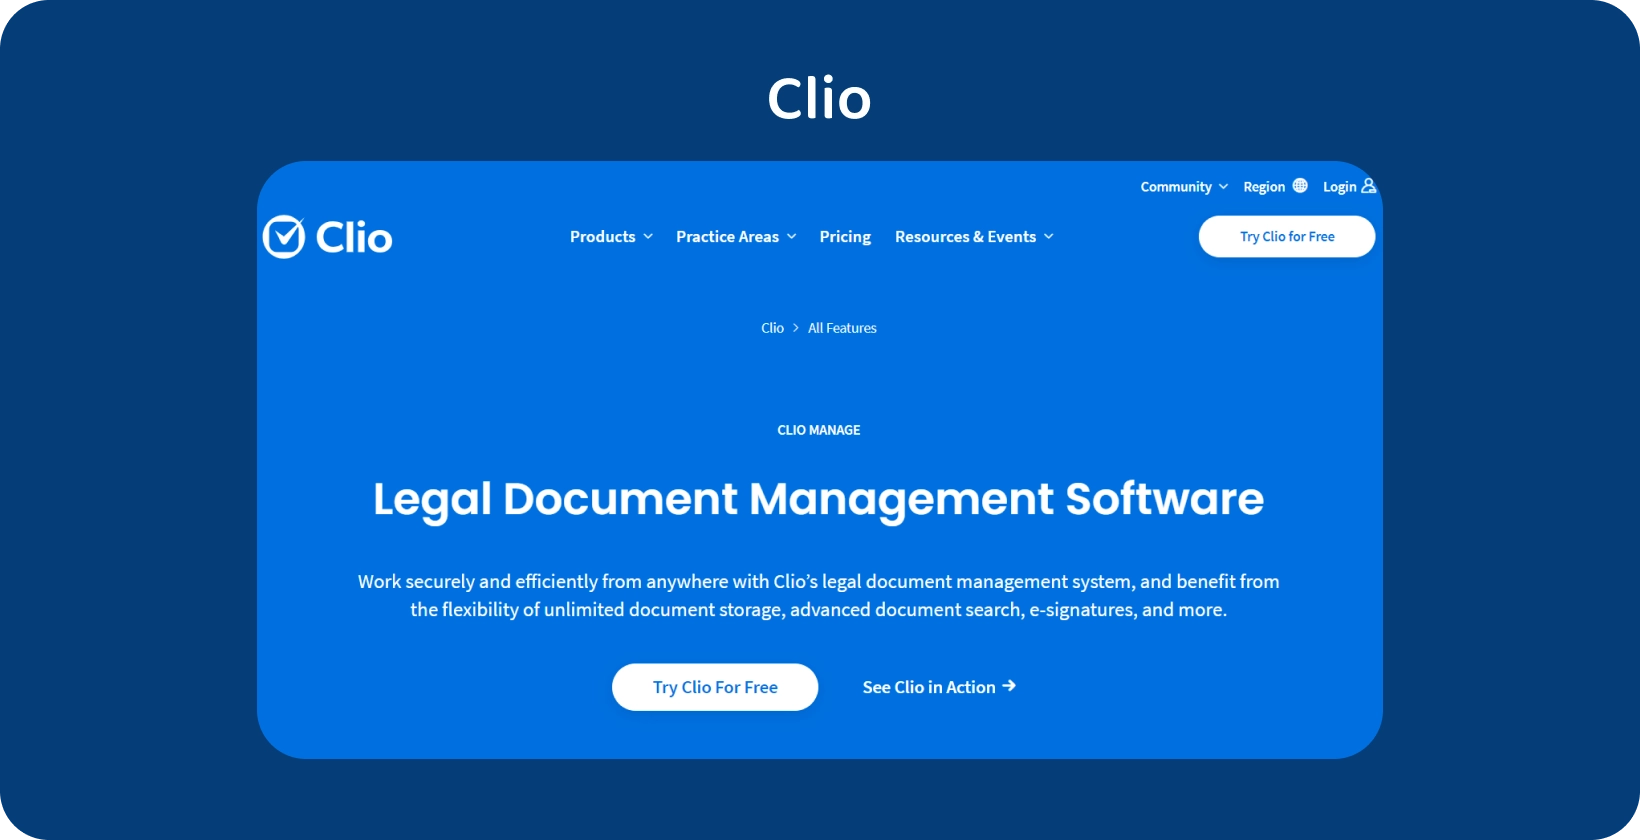 A interface de usuário da Clio apresenta seu Software de Gestão de Documentos Jurídicos, otimizando o tratamento organizado de registros.